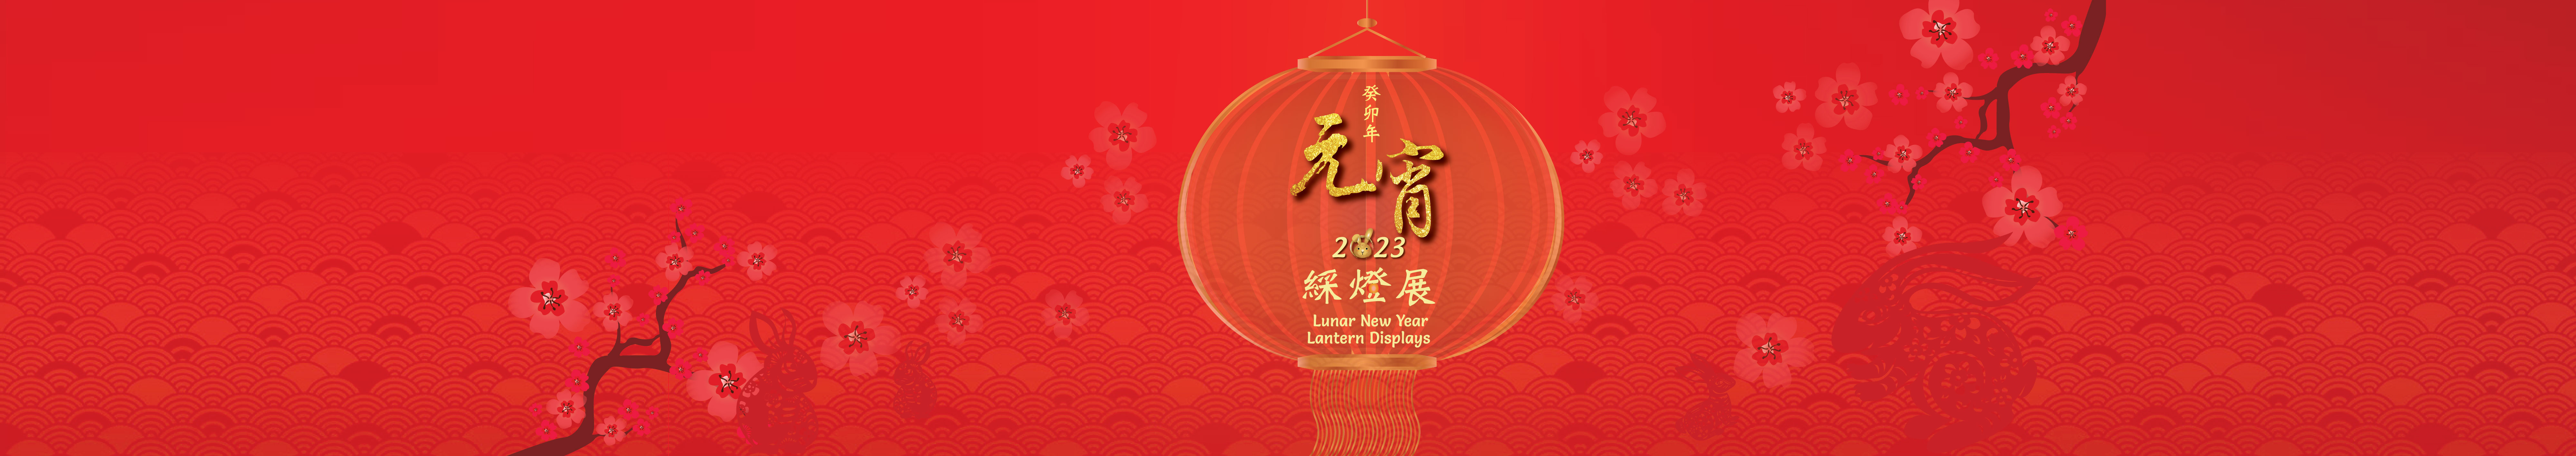 2023 Lunar New Year Lantern Displays